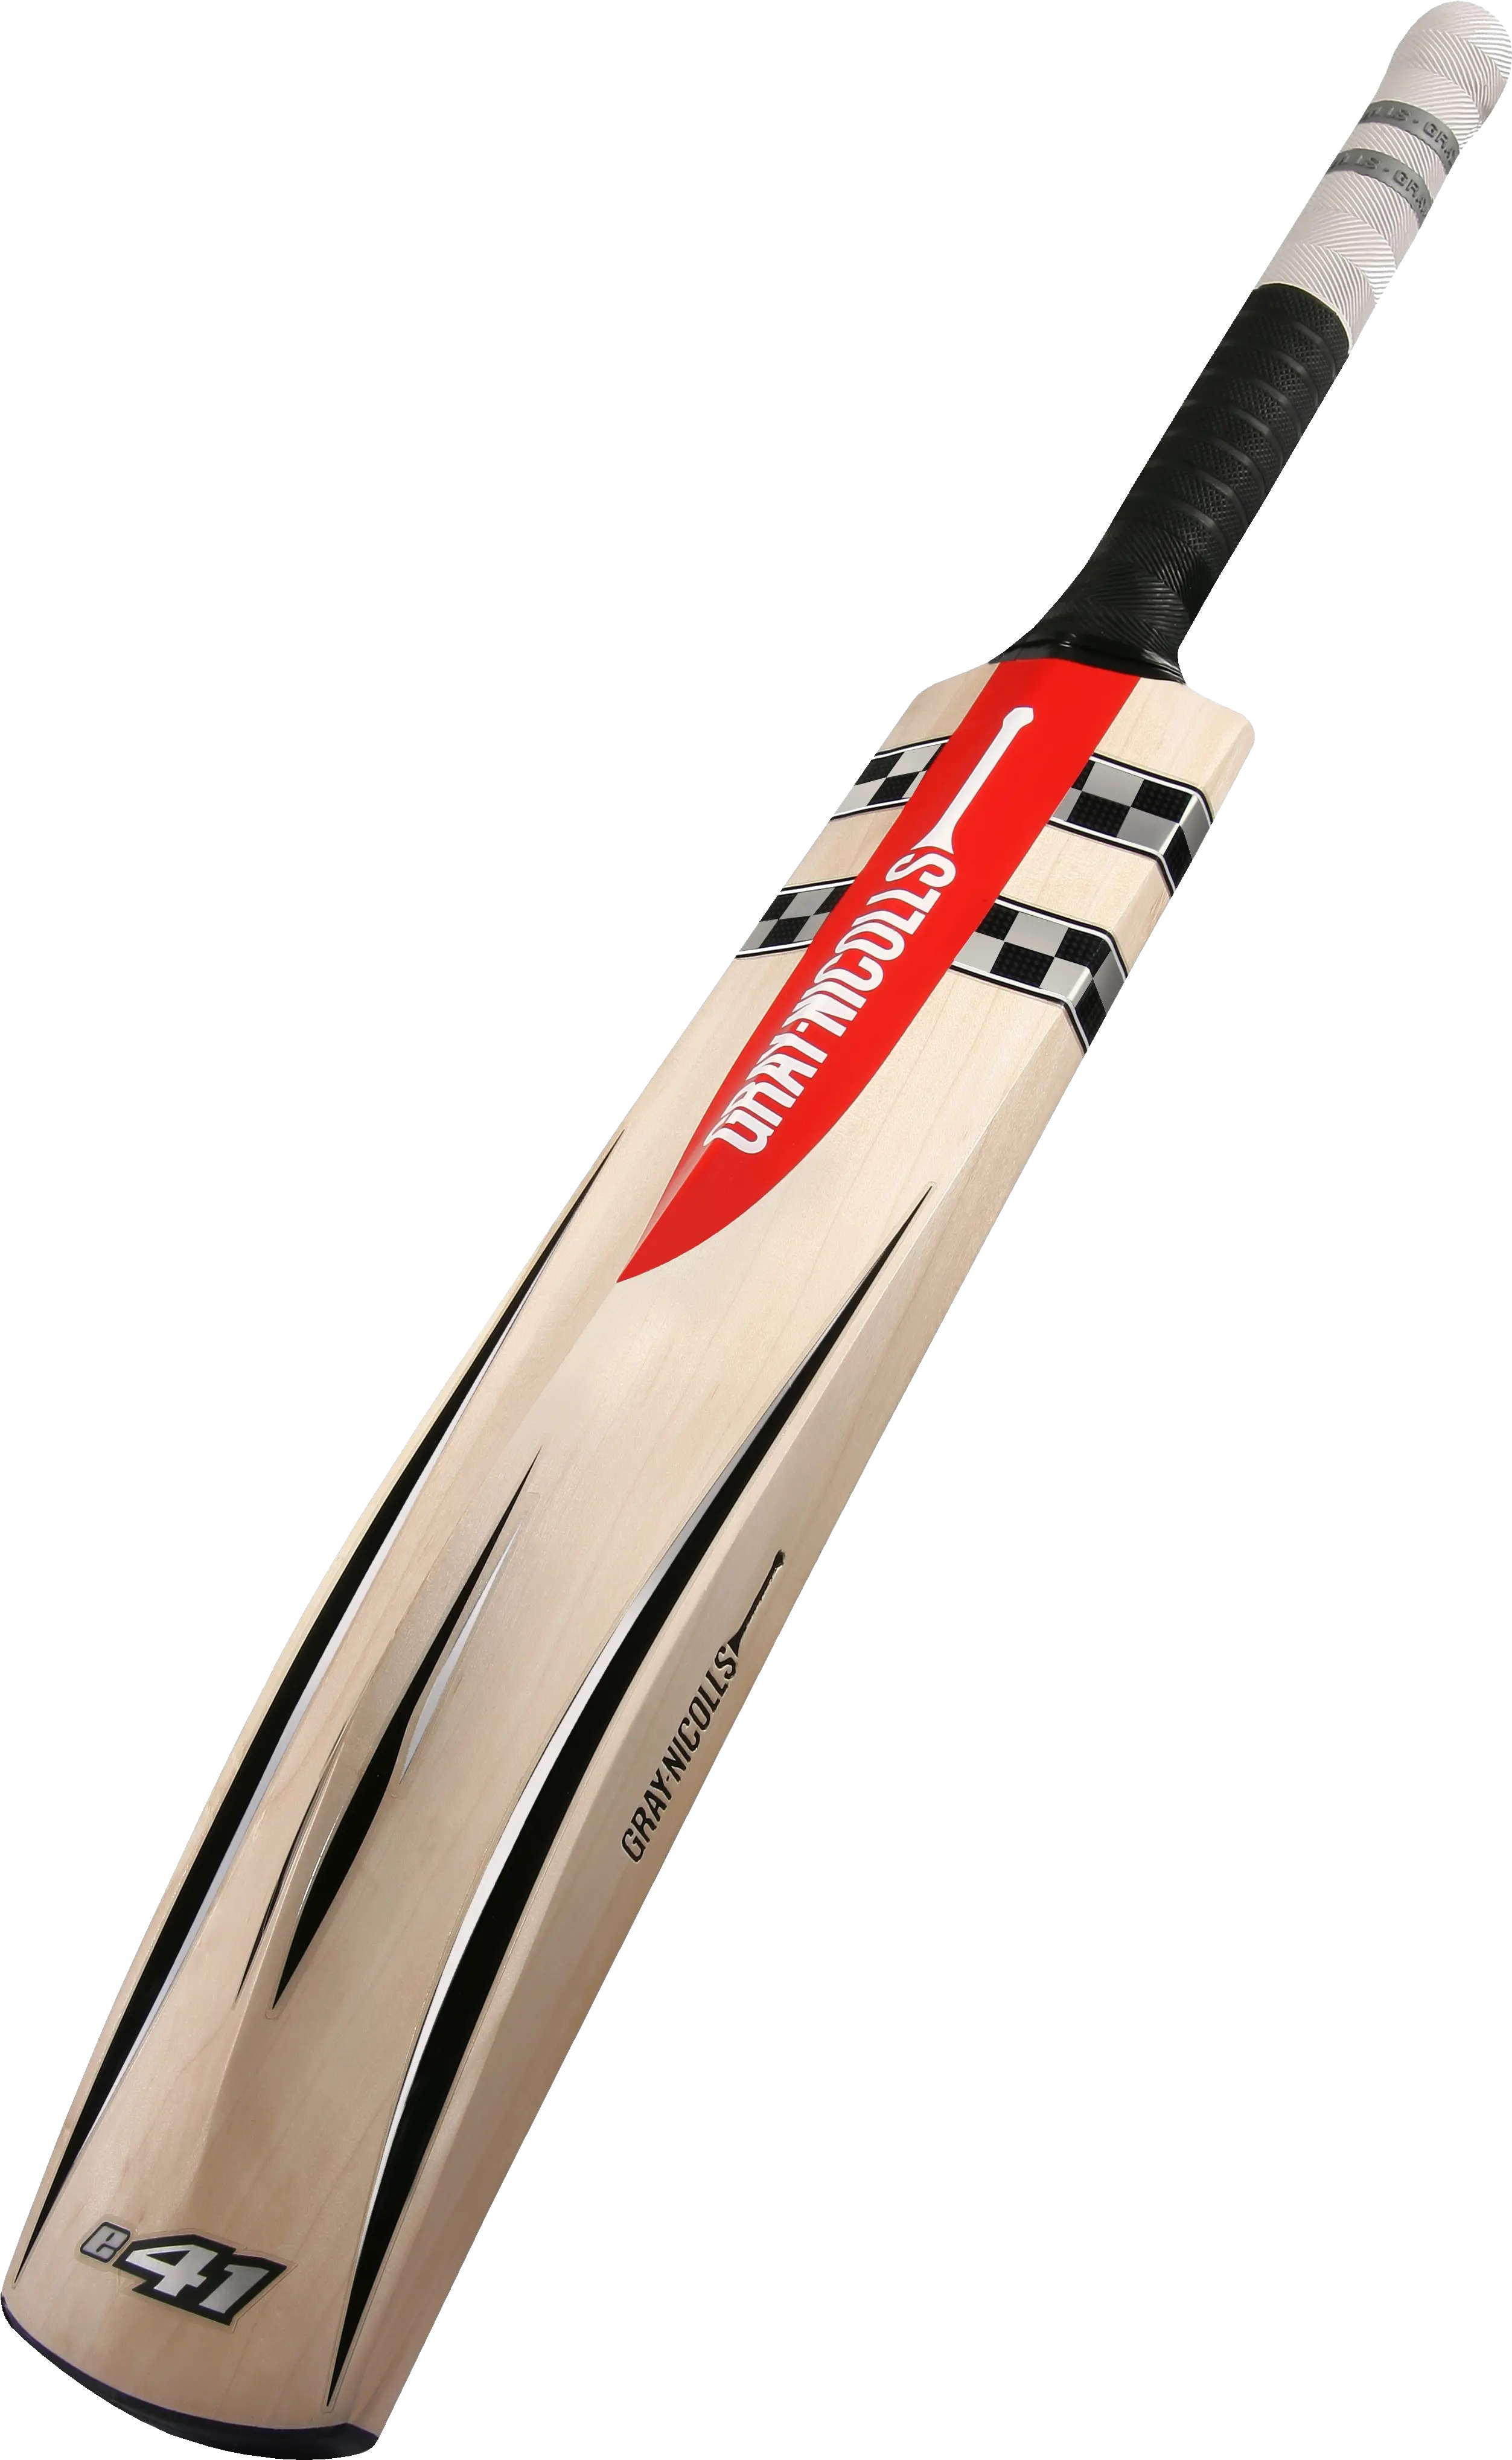 Download Cricket Bat Hq Png Image Free 527829 Png Gray Nicolls Bat India Bats Png